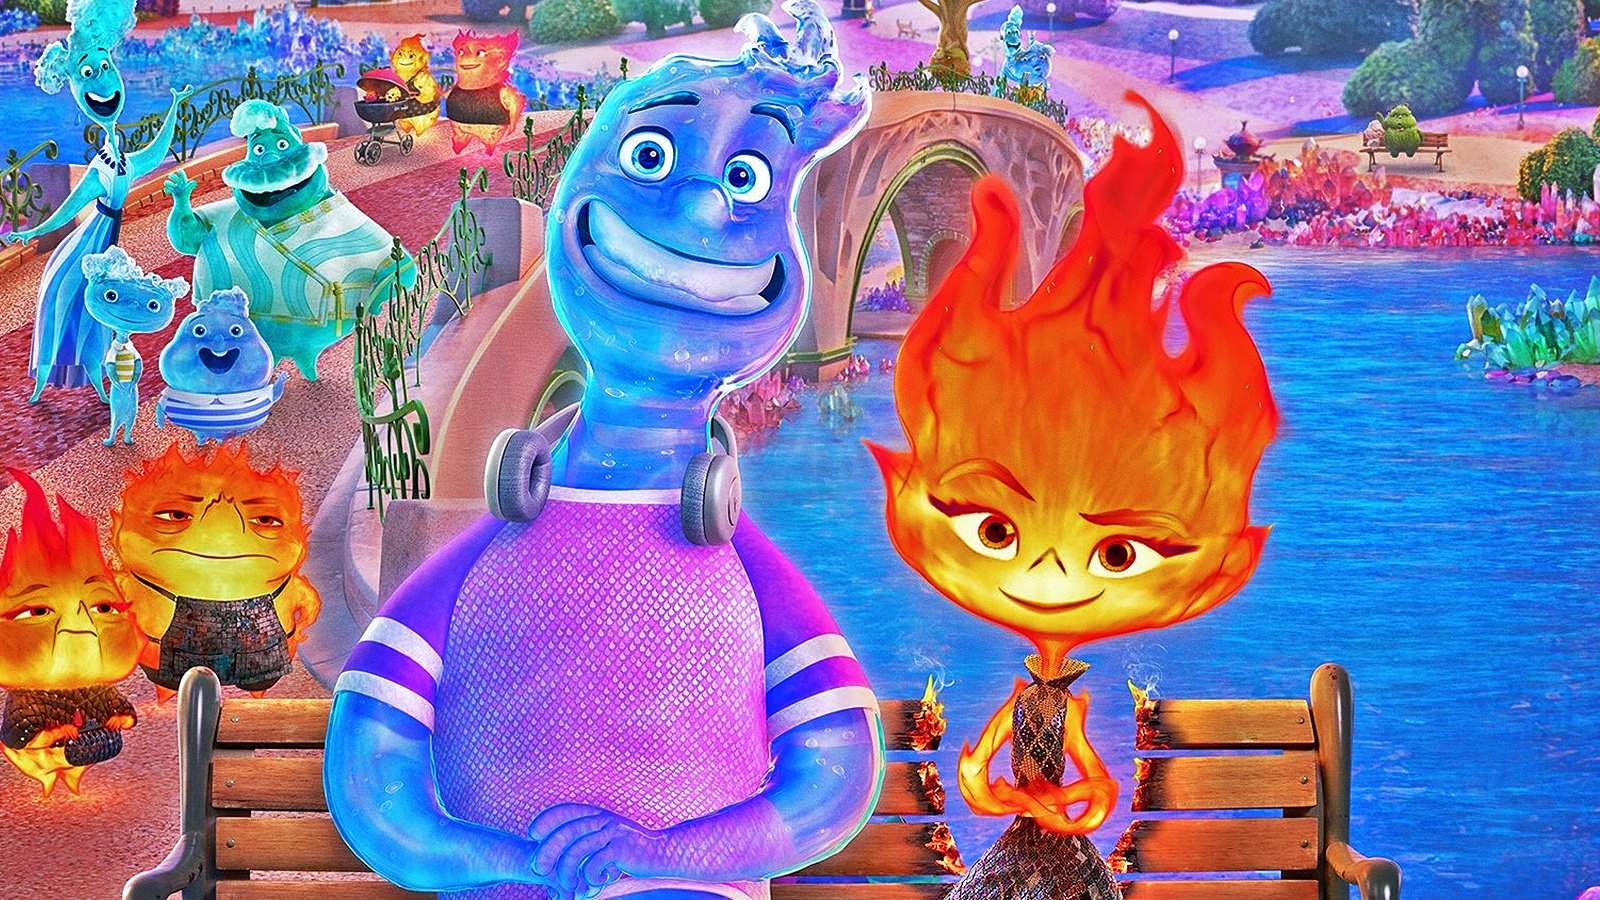 Elemental in blu-ray, la recensione: ecco perché la rivincita del film Pixar continuerà anche in homevideo